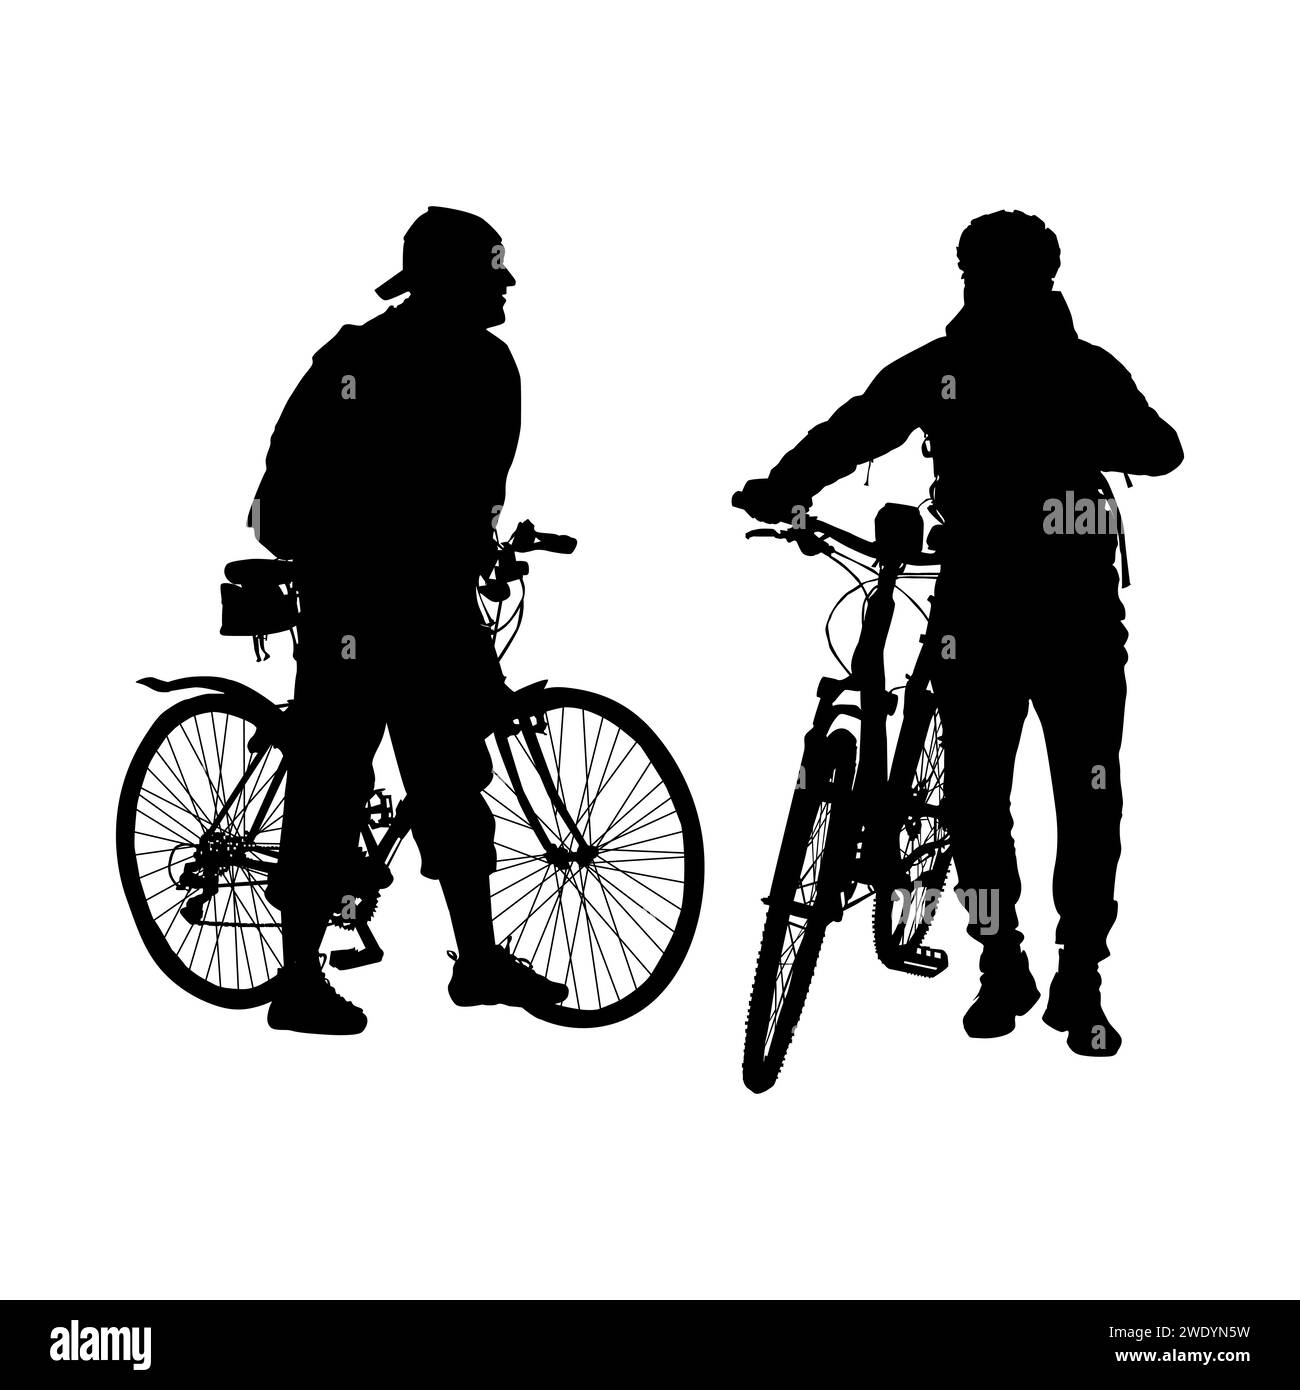 Silhouette de deux cyclistes. Cycliste s'est arrêté avec un vélo pour parler à un ami. Deux hommes se tiennent face l'un à l'autre. Cycliste masculin et hommes de randonnée se rencontrent. Illustration de Vecteur